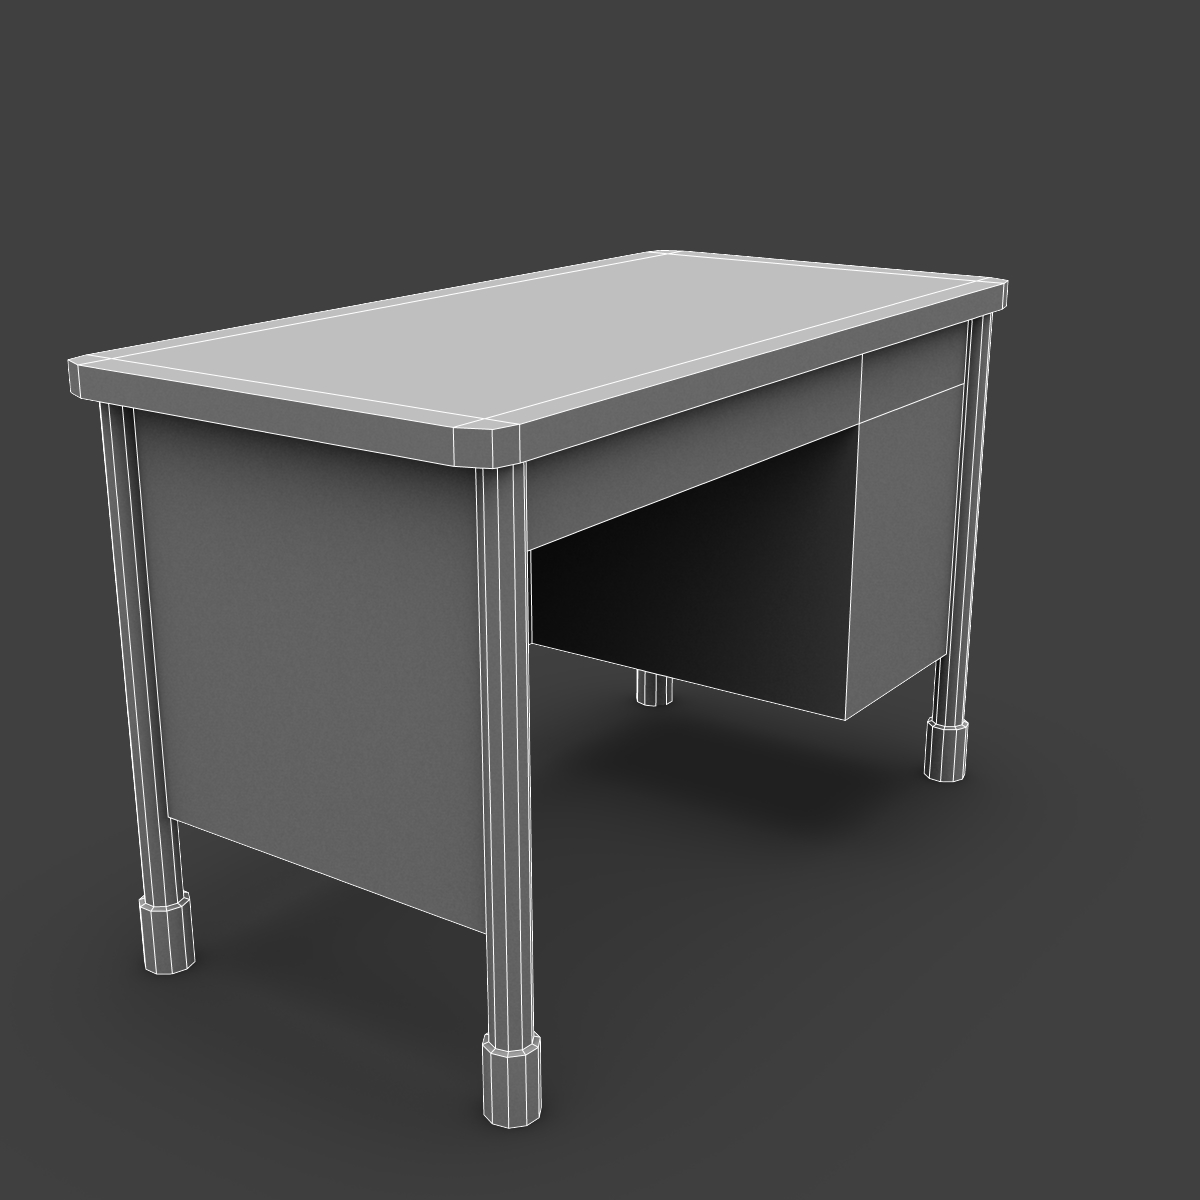 real-time-teacher-desk-3d-model